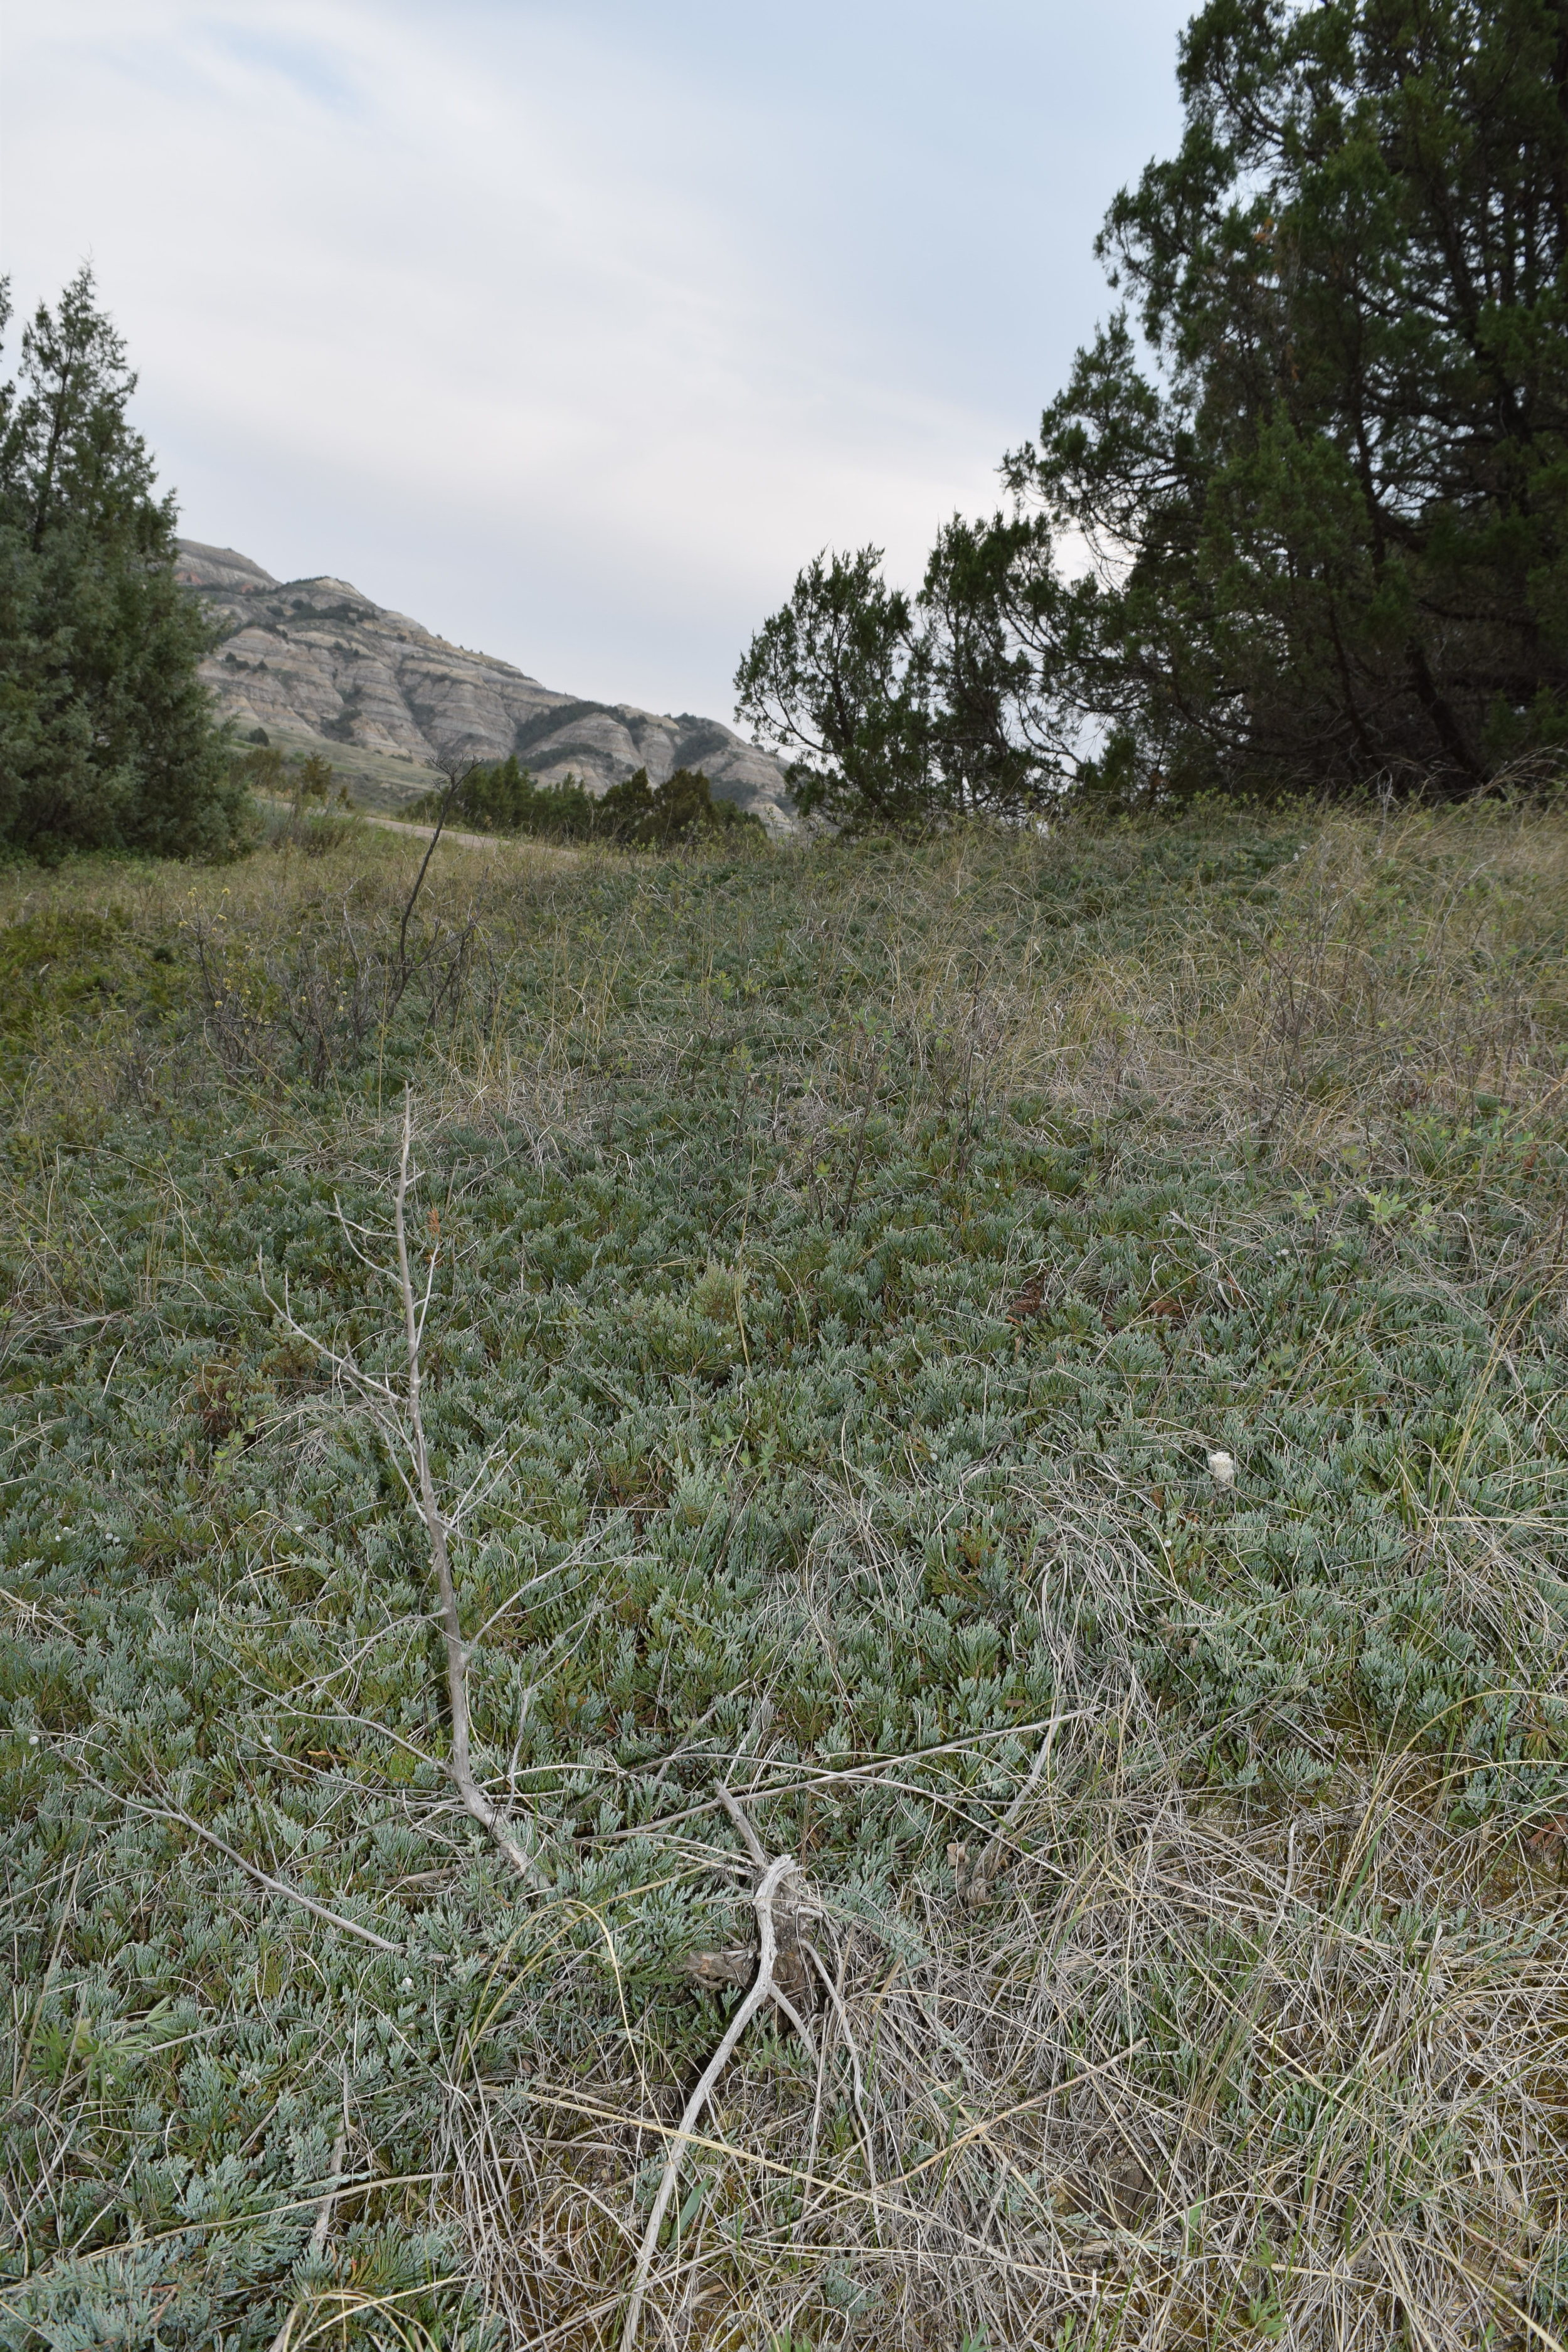 Creeping Juniper (Juniperus horizontalis)